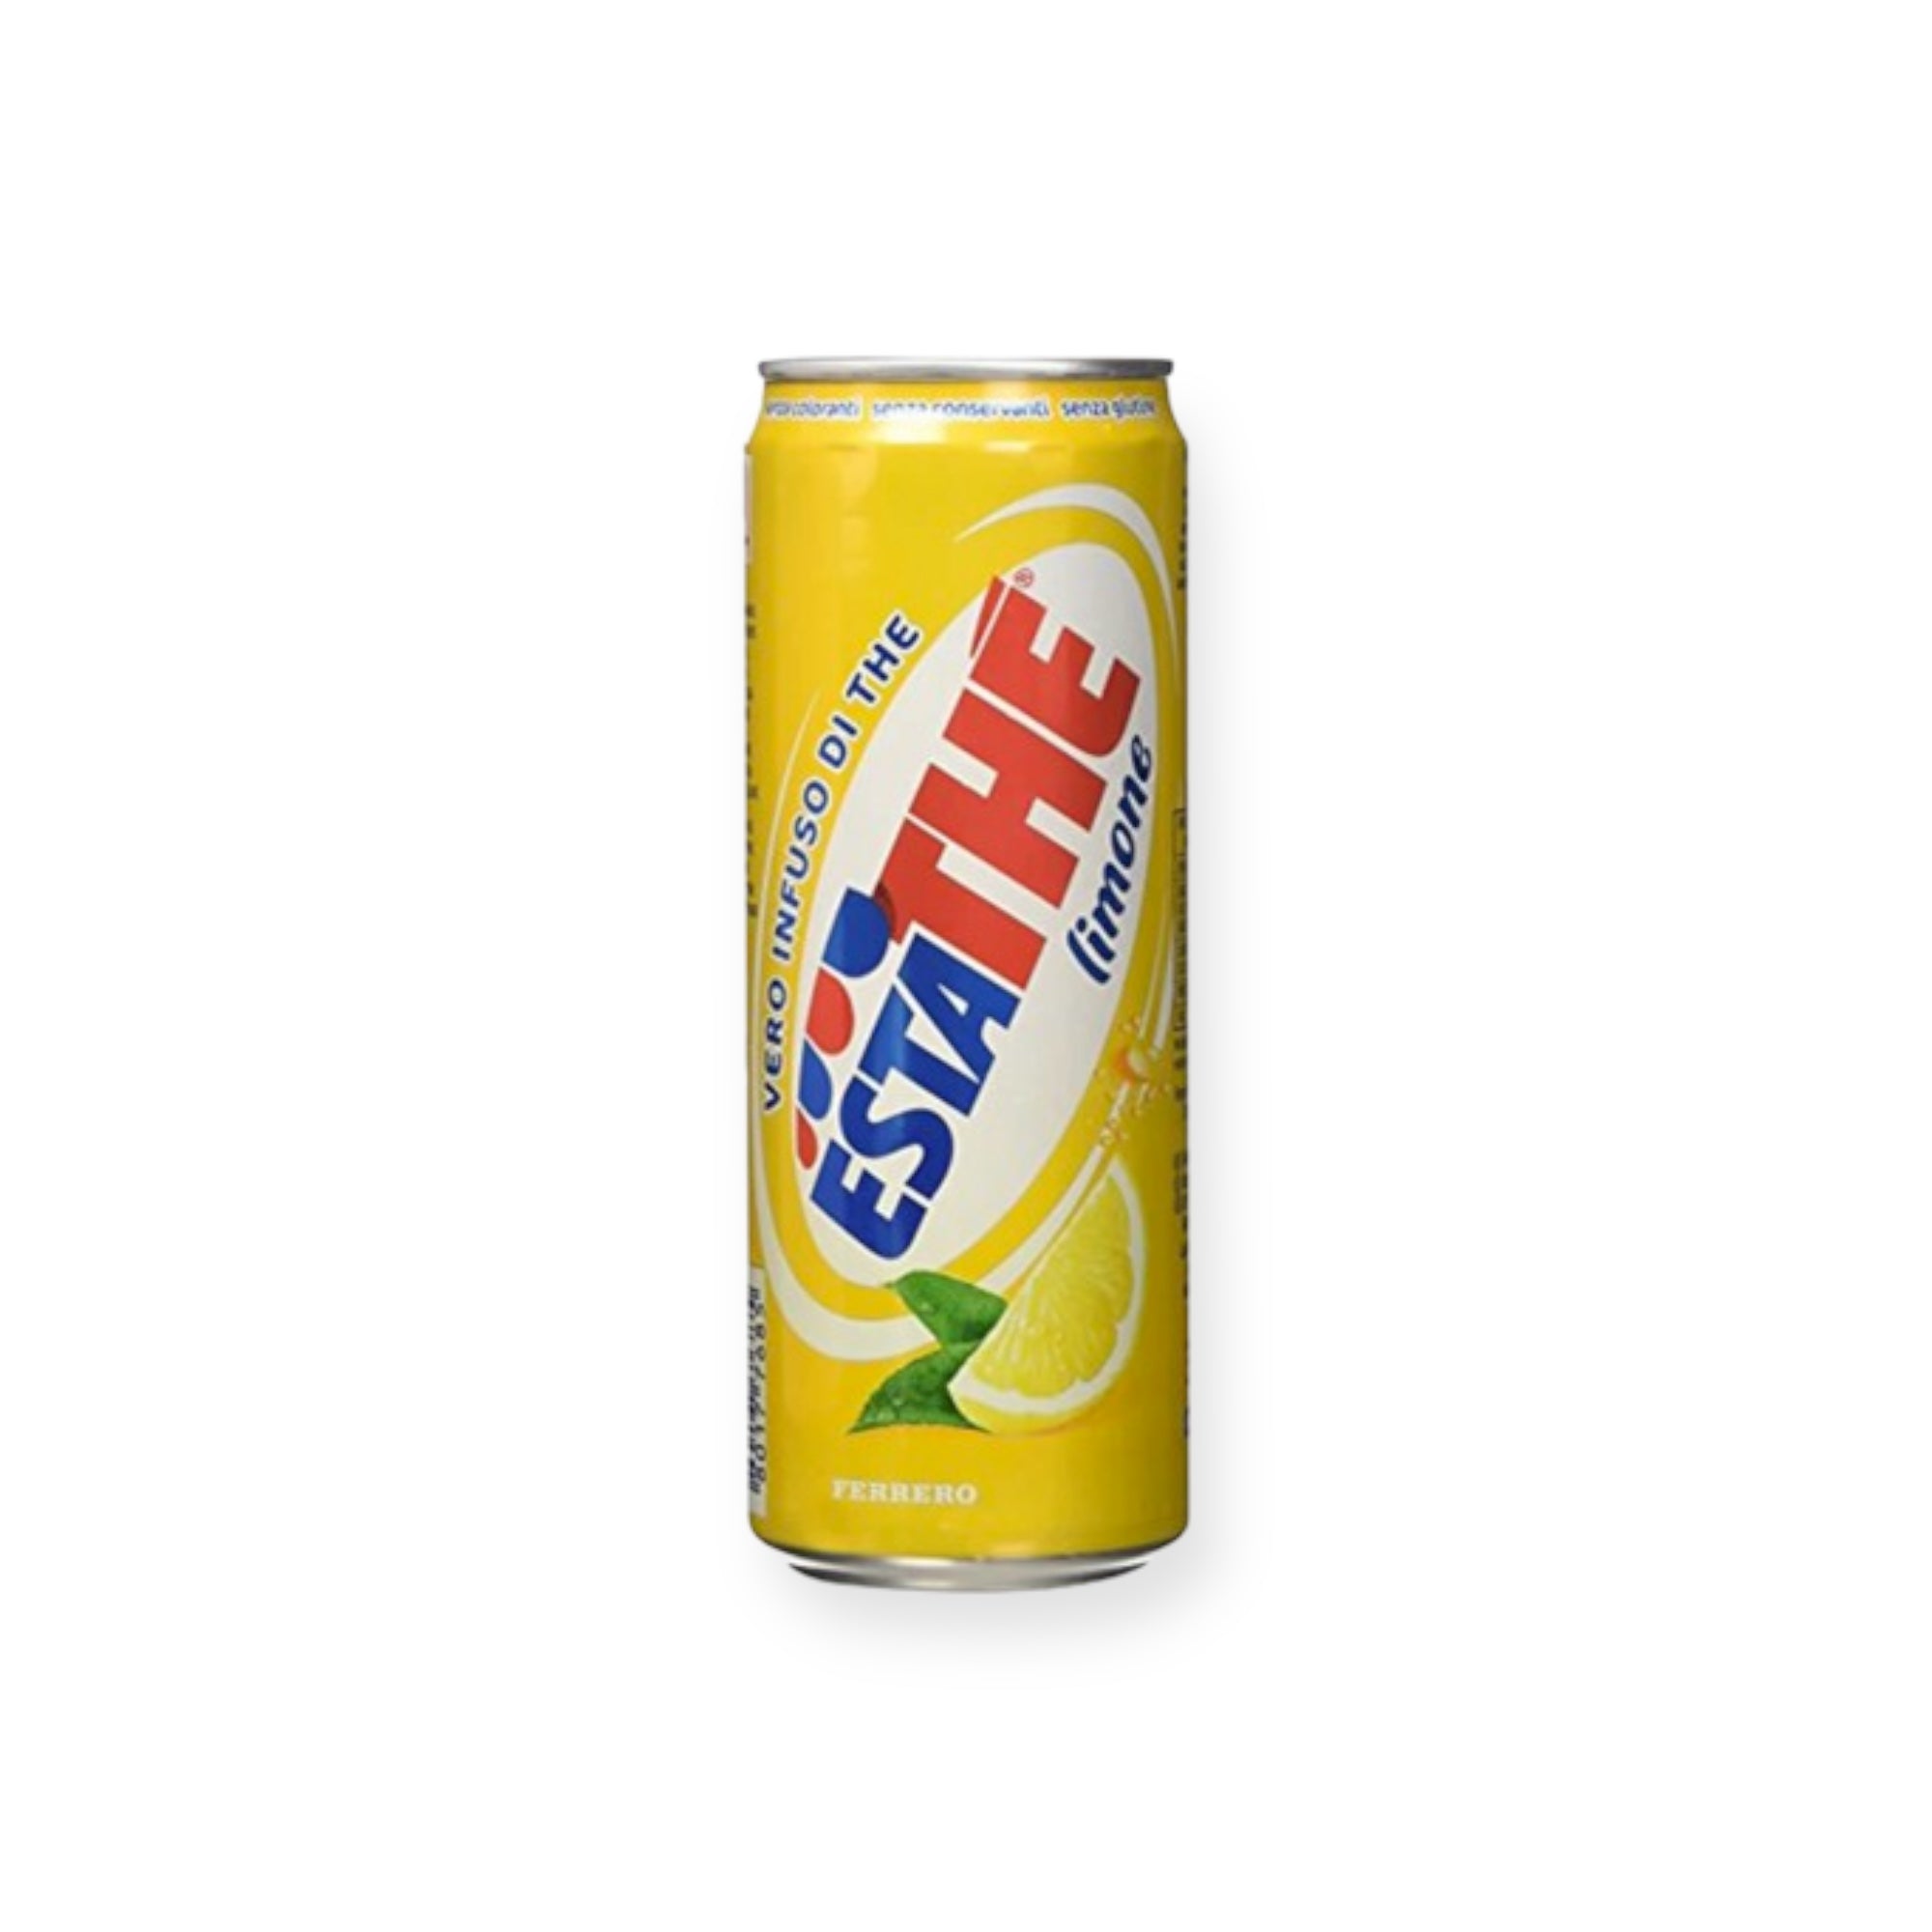 Estathé, the al limone 400 ml